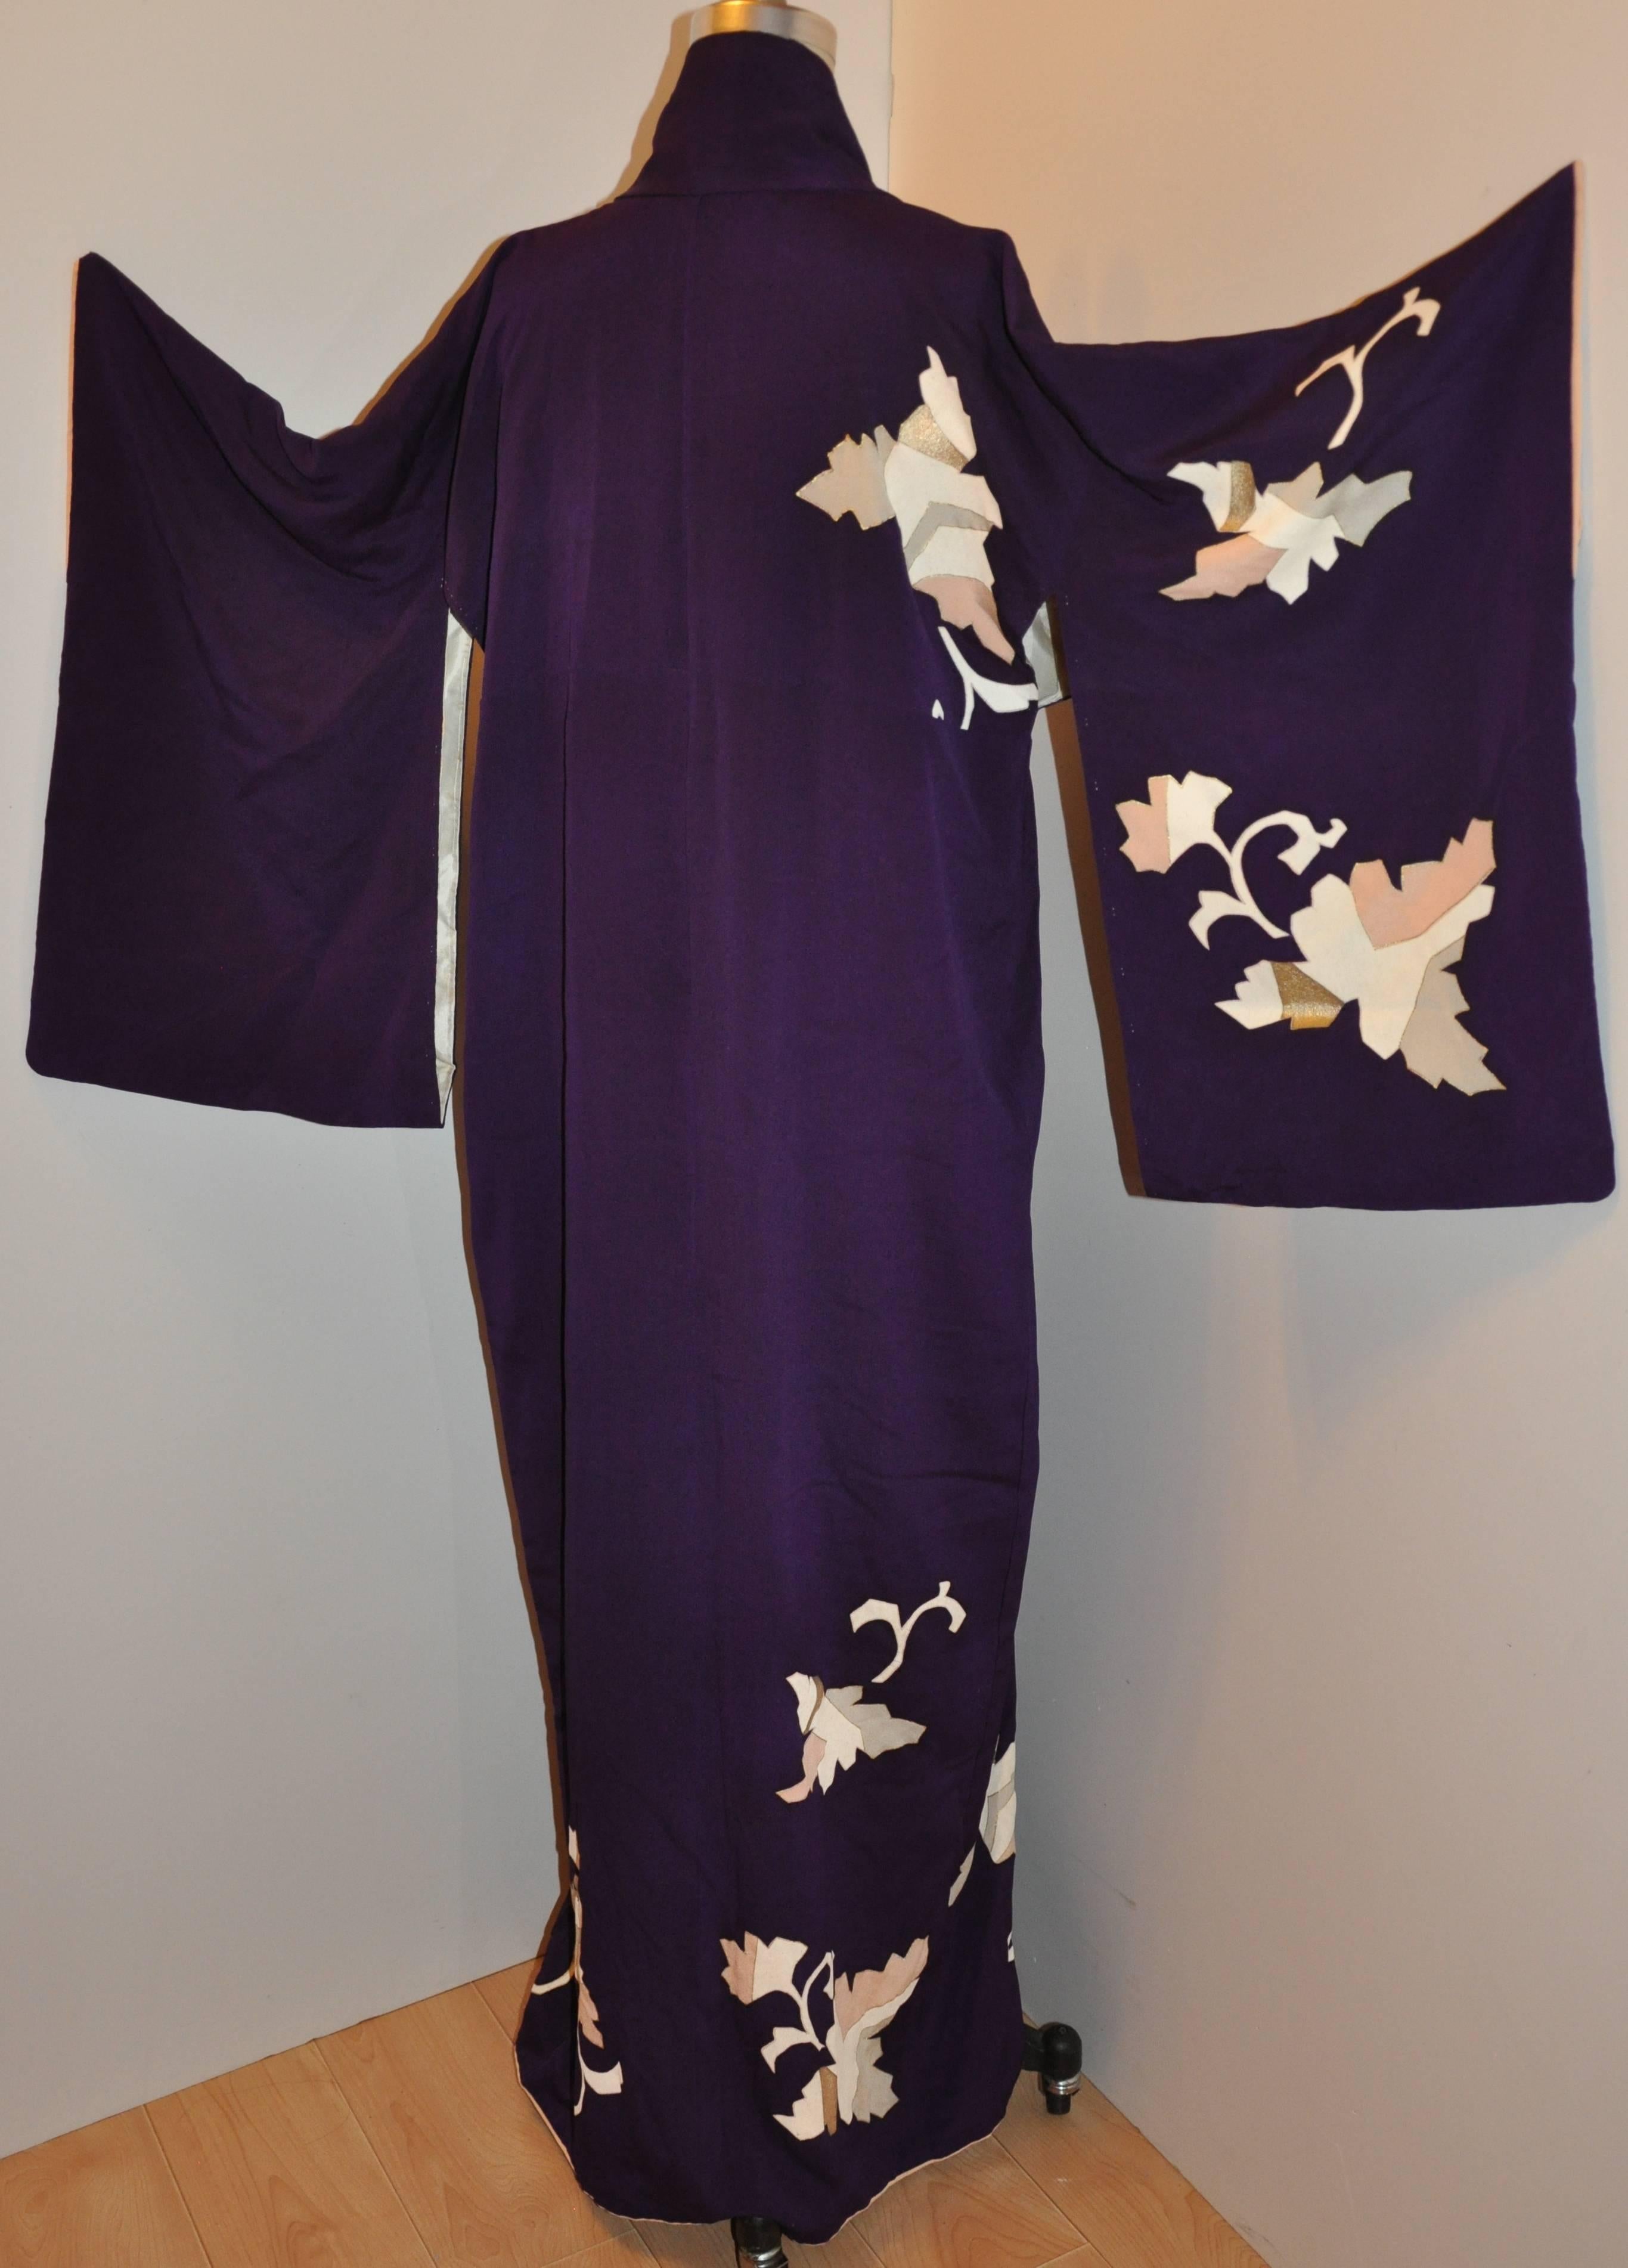        Diese wunderbare traditionelle und elegante tiefe Pflaume akzentuiert mit Multi geometrischen floralen Seide Kimono Maßnahmen 59 Zoll in der Länge. Der Achselumfang beträgt 48 Zoll, Kragen-zu-Ärmel-Manschette ist 20 1/2 Zoll, Ärmellänge ist